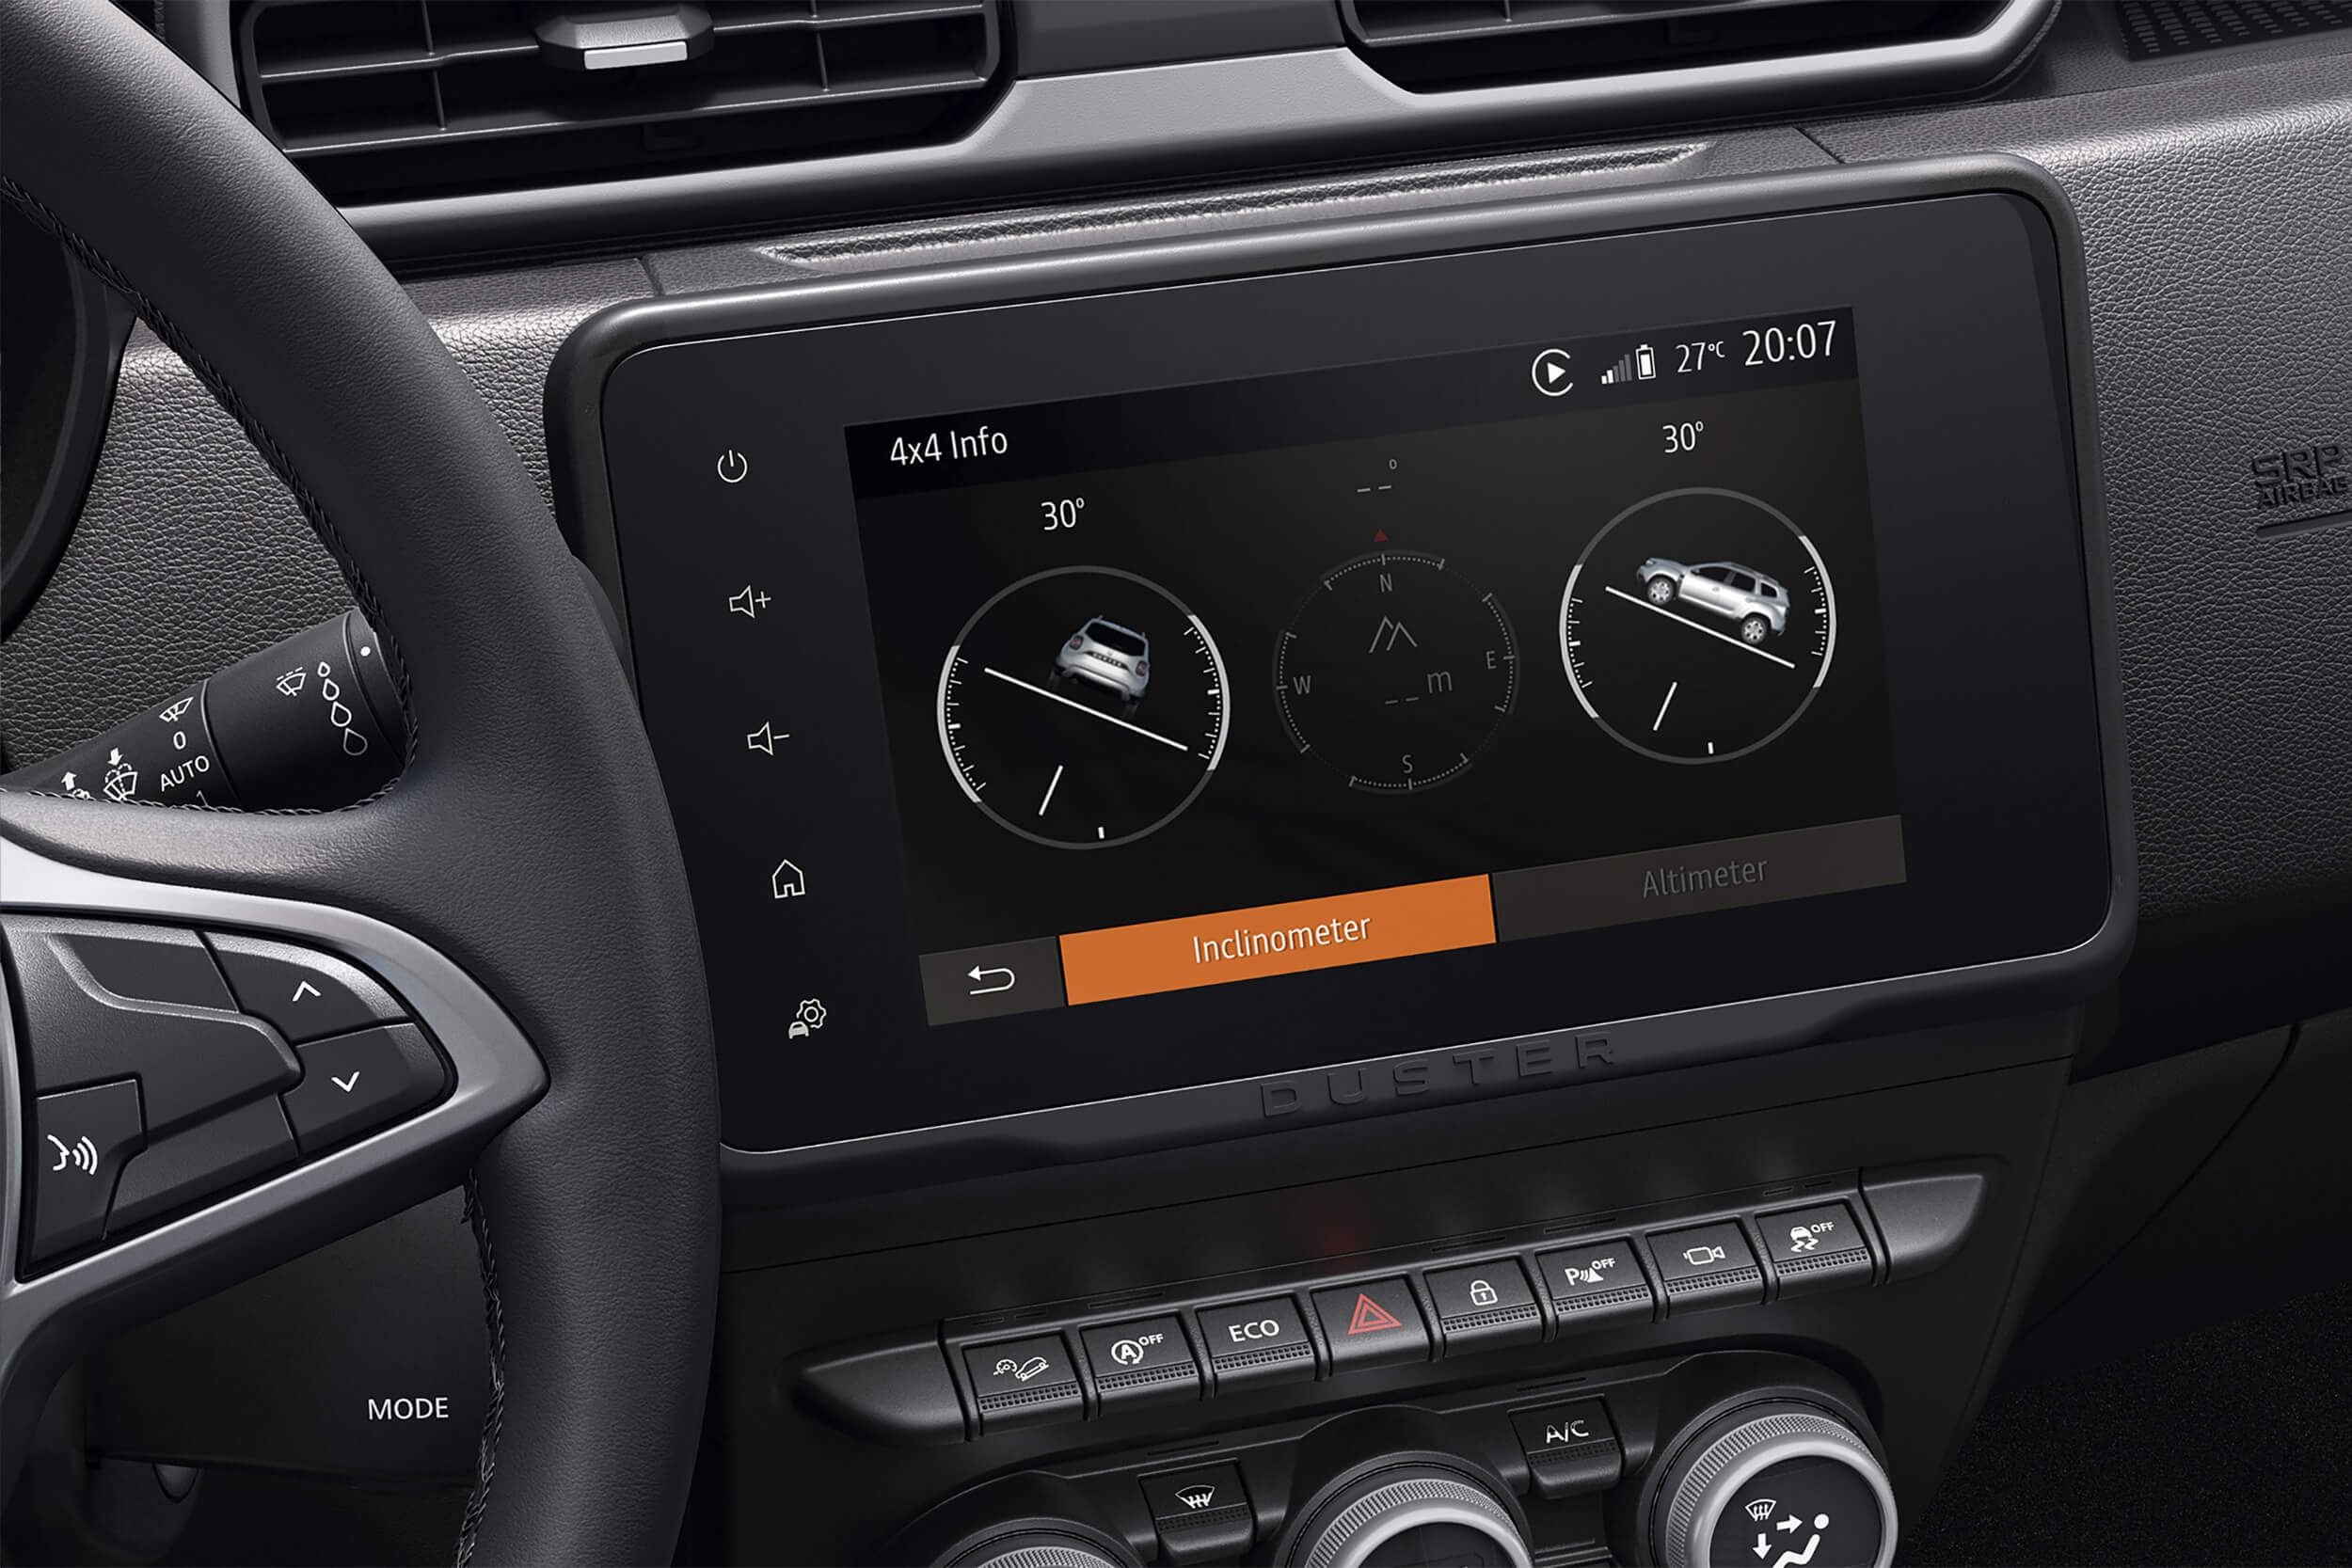 Dacia Duster visureigio centriniame ekrane matomas 4x4 Monitor sistemos langas